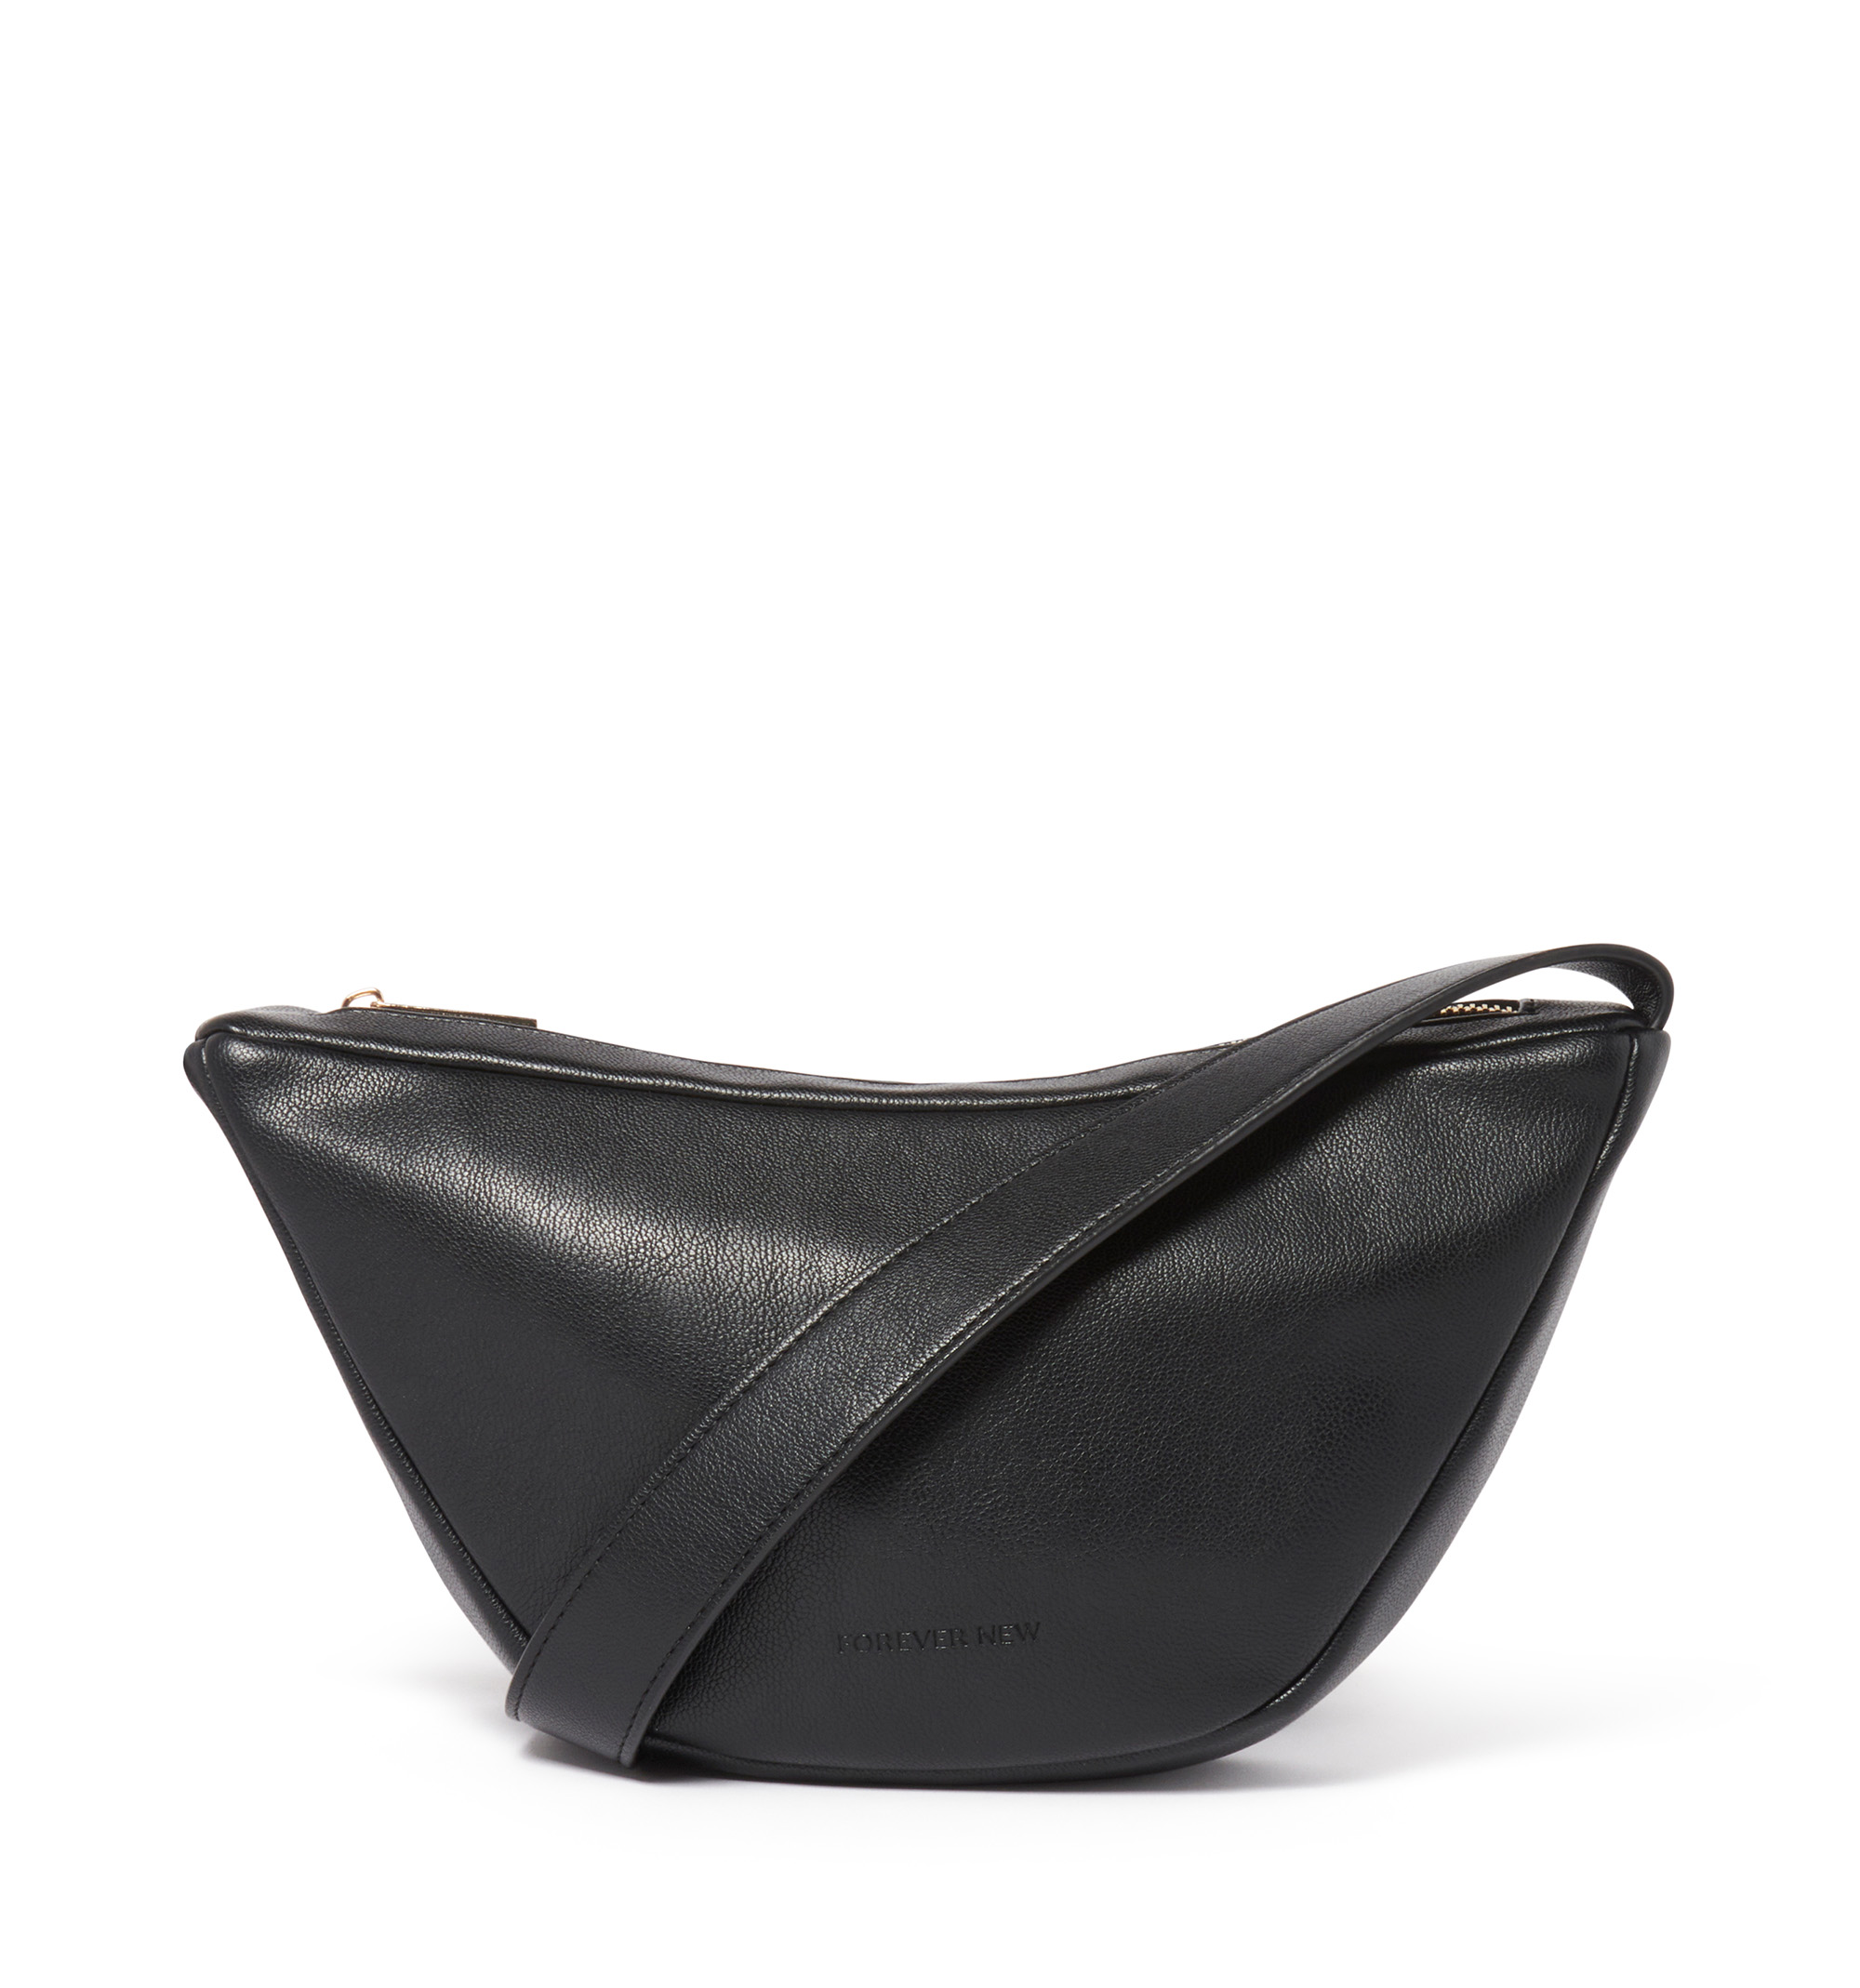 Pam Shoulder Bag Black | Forever New